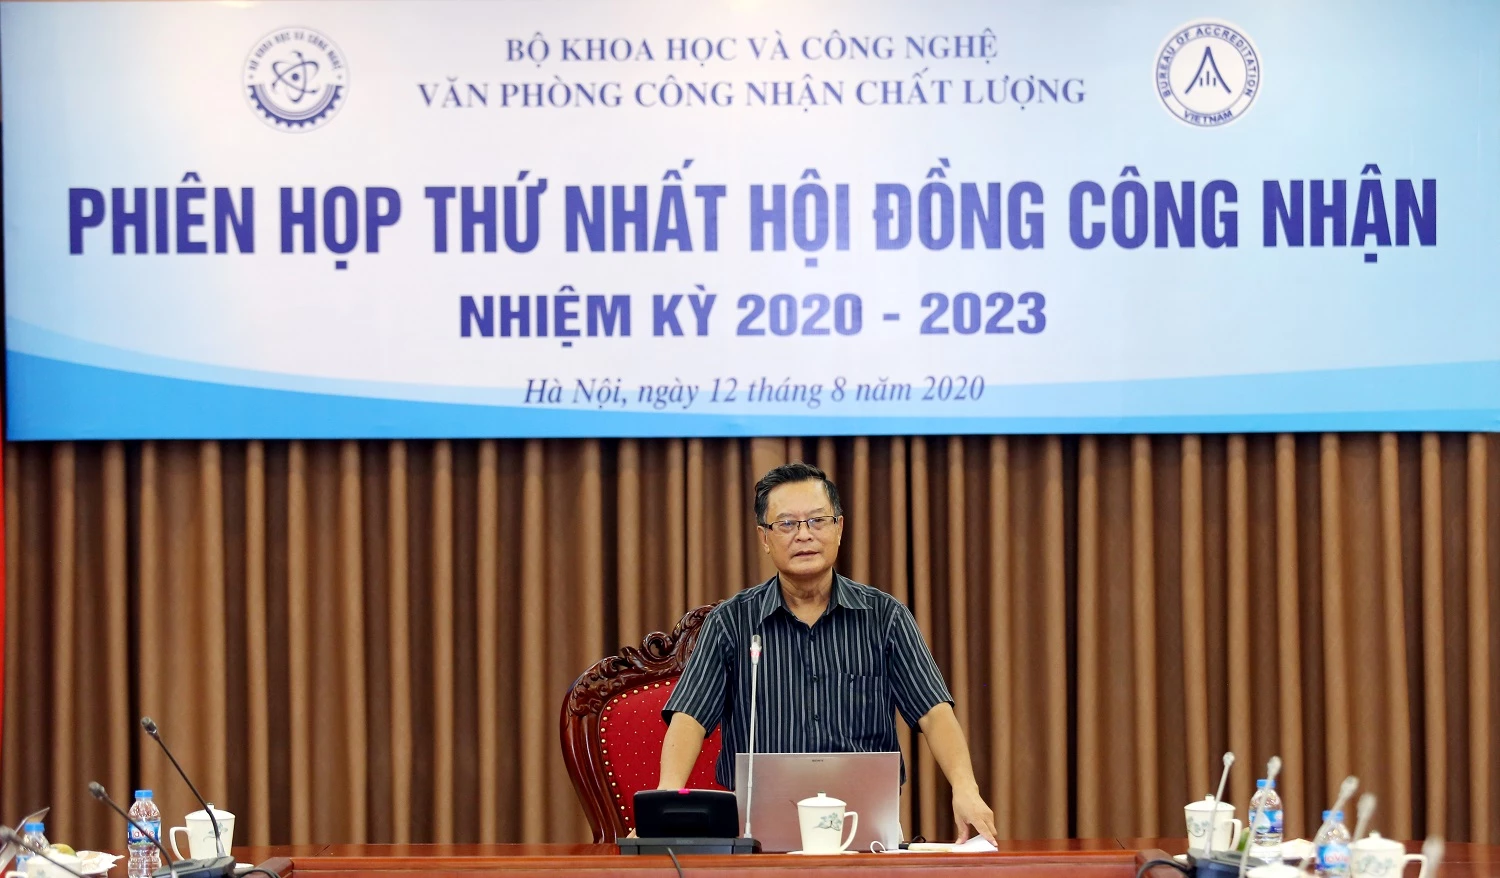 PGS.TS Đoàn Năng, Chủ tịch Hội đồng công nhận phát biểu tại Phiên họp.